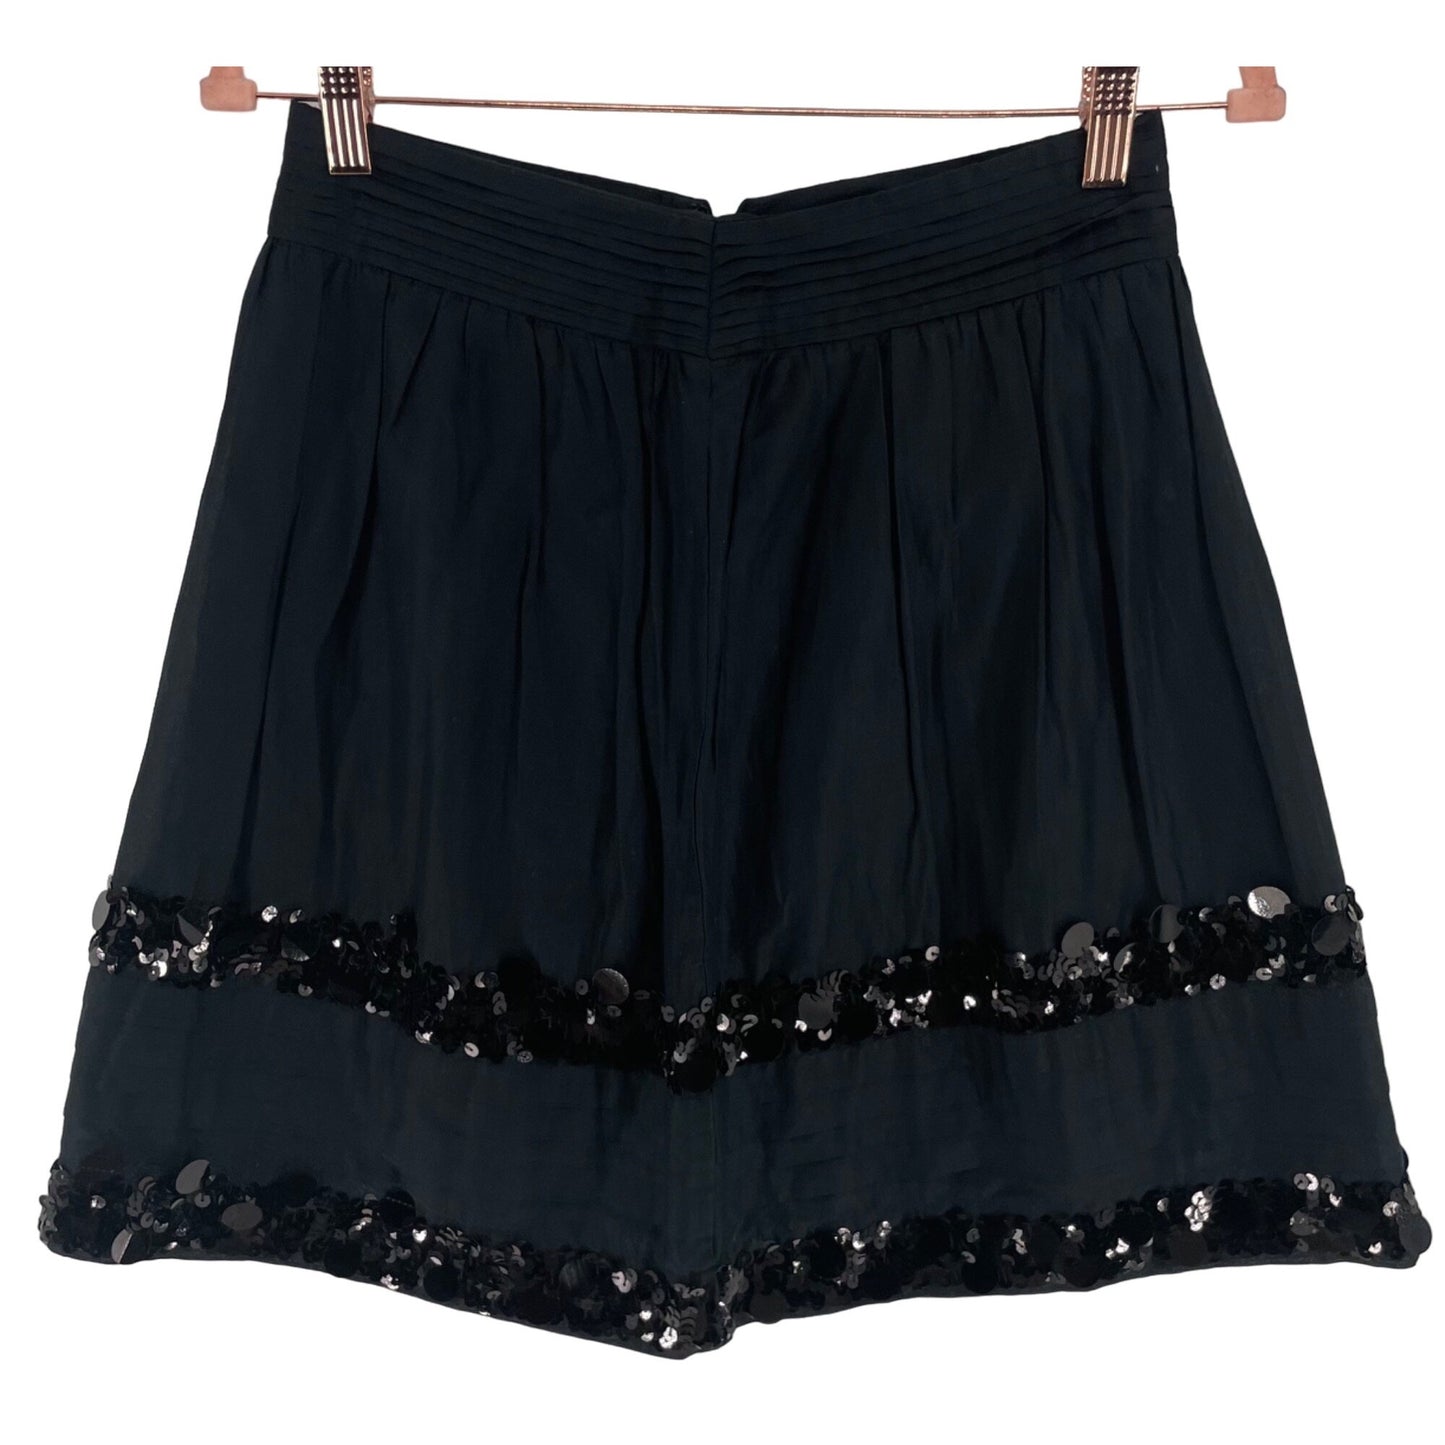 LOFT Women's Size 2P Black A-Line Skirt W/ Sequin Embellishment